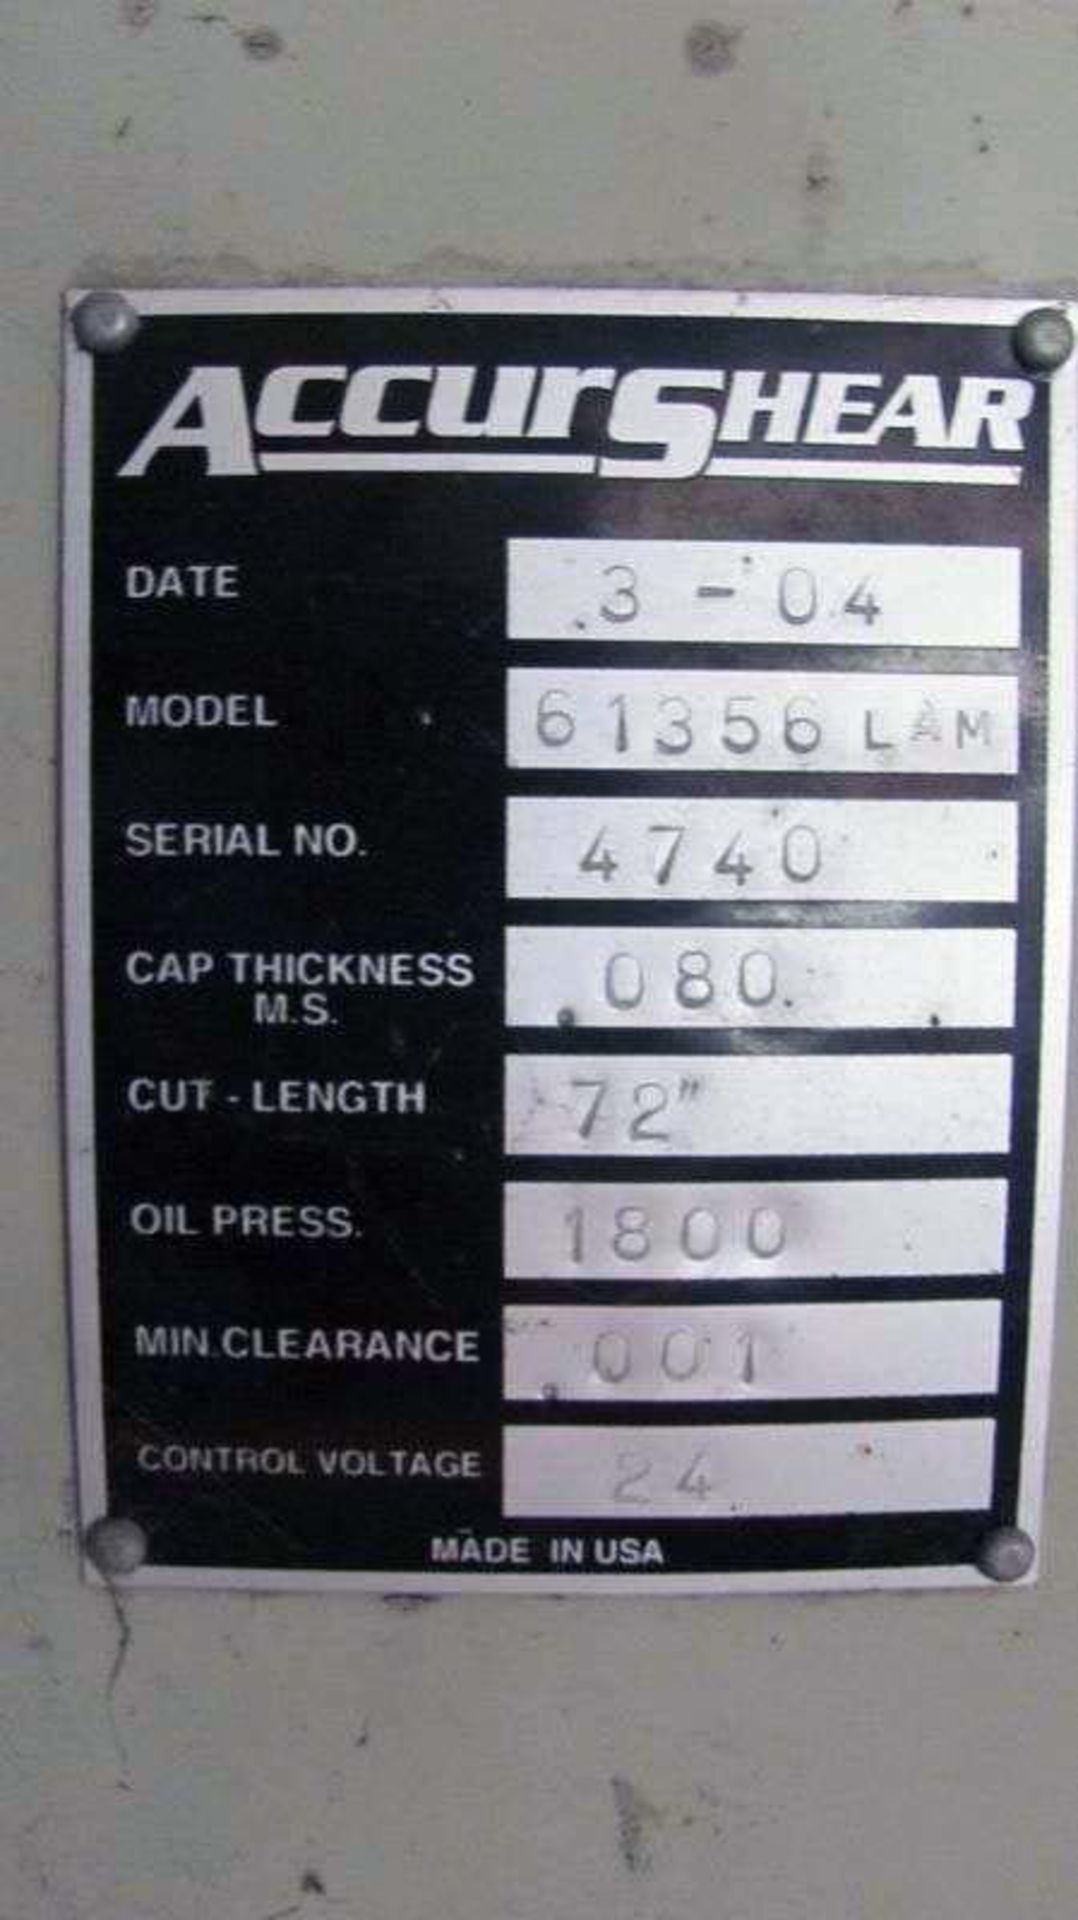 2004 Accurshear Hydraulic Power Shear | 14 Ga. x 6', Mdl: 61356 LAM, S/N: 4740 - 7716XJVP - Image 4 of 4